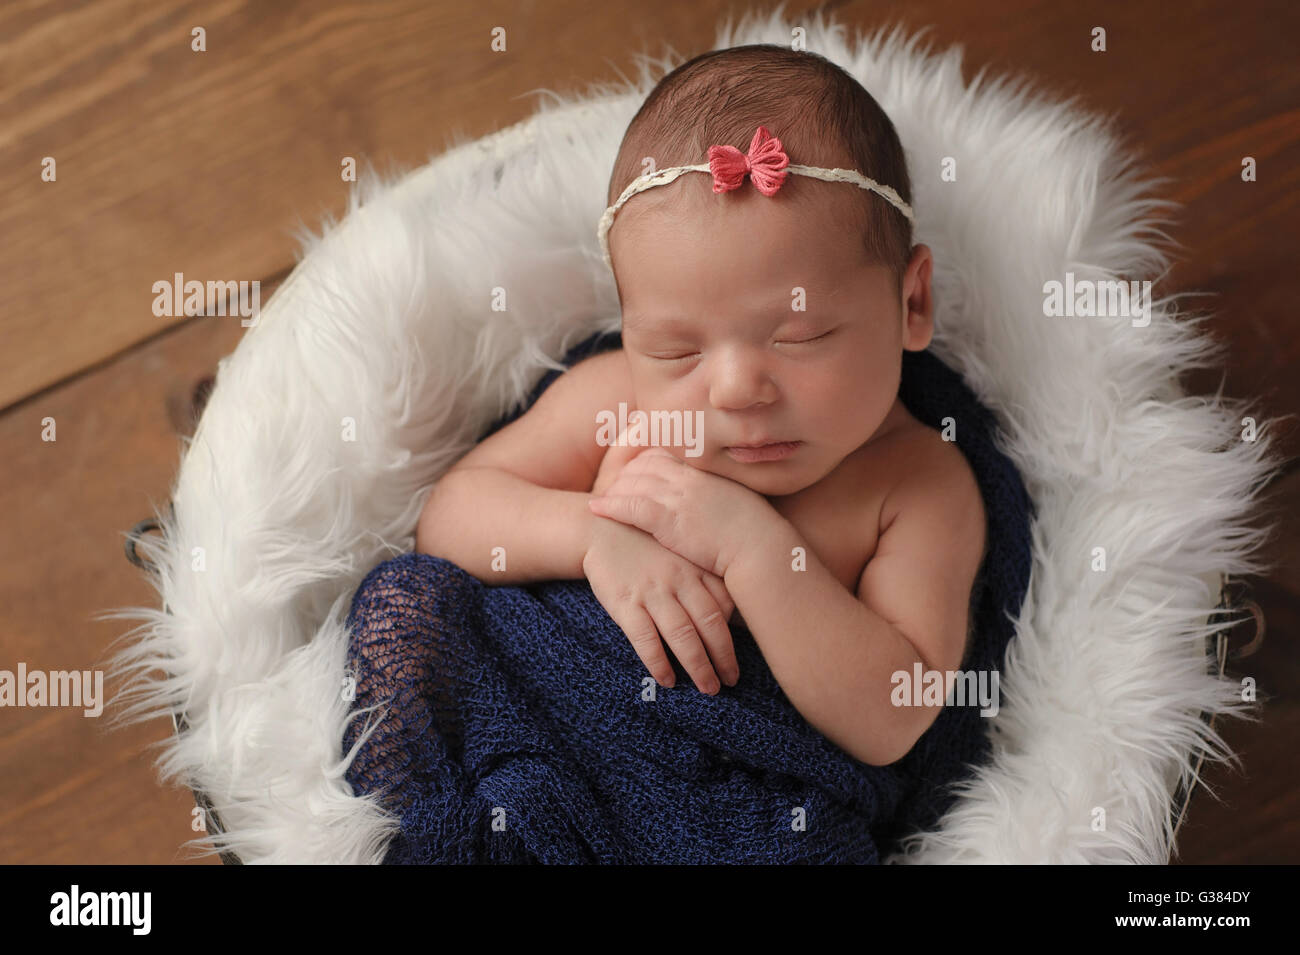 Elf Tage altes neugeborenes Mädchen schlafen in einem kleinen Eimer Pelz gefüttert. Sie ist in einem blauen Schal gehüllt. Gedreht im Studio auf eine Stockfoto